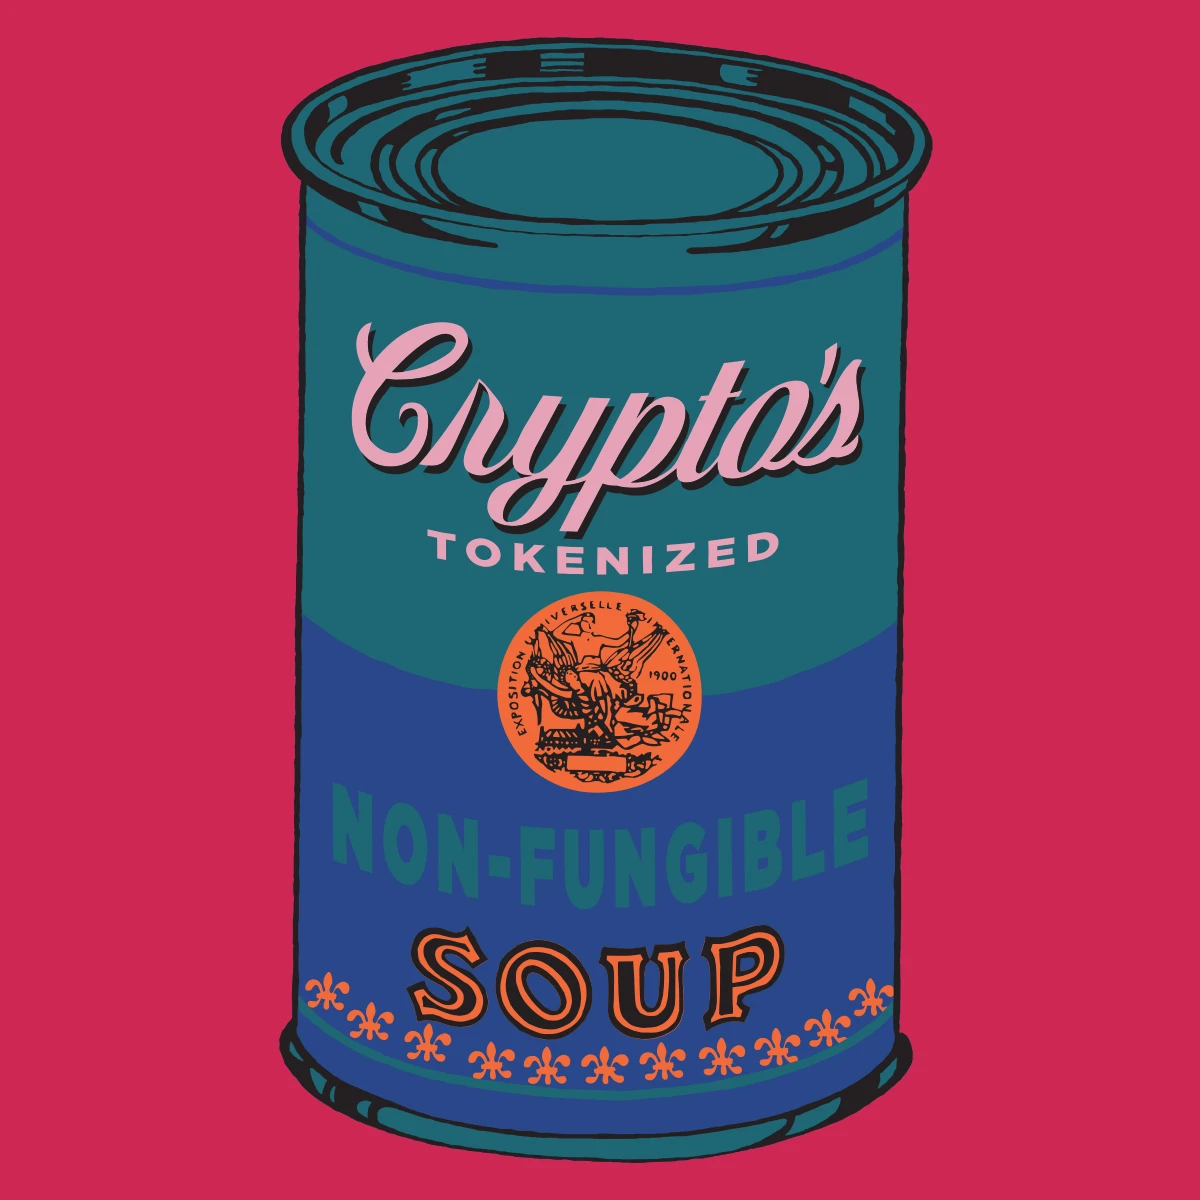 Non-Fungible Soup #1853